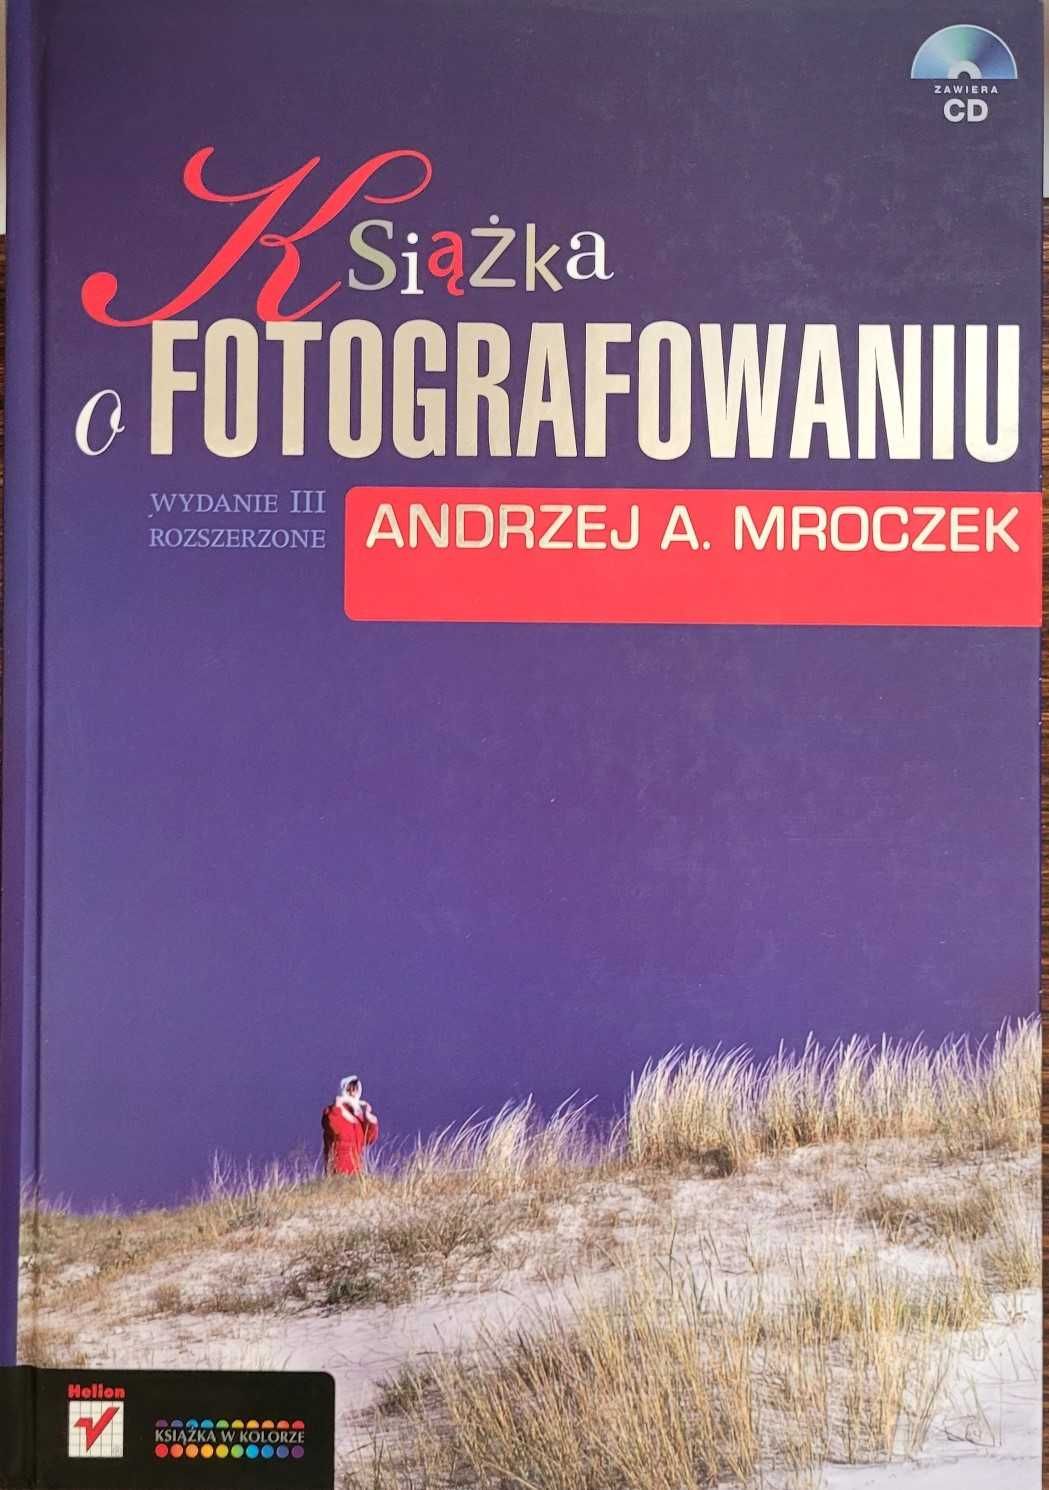 Książka o fotografowaniu Andrzej A. Mroczek